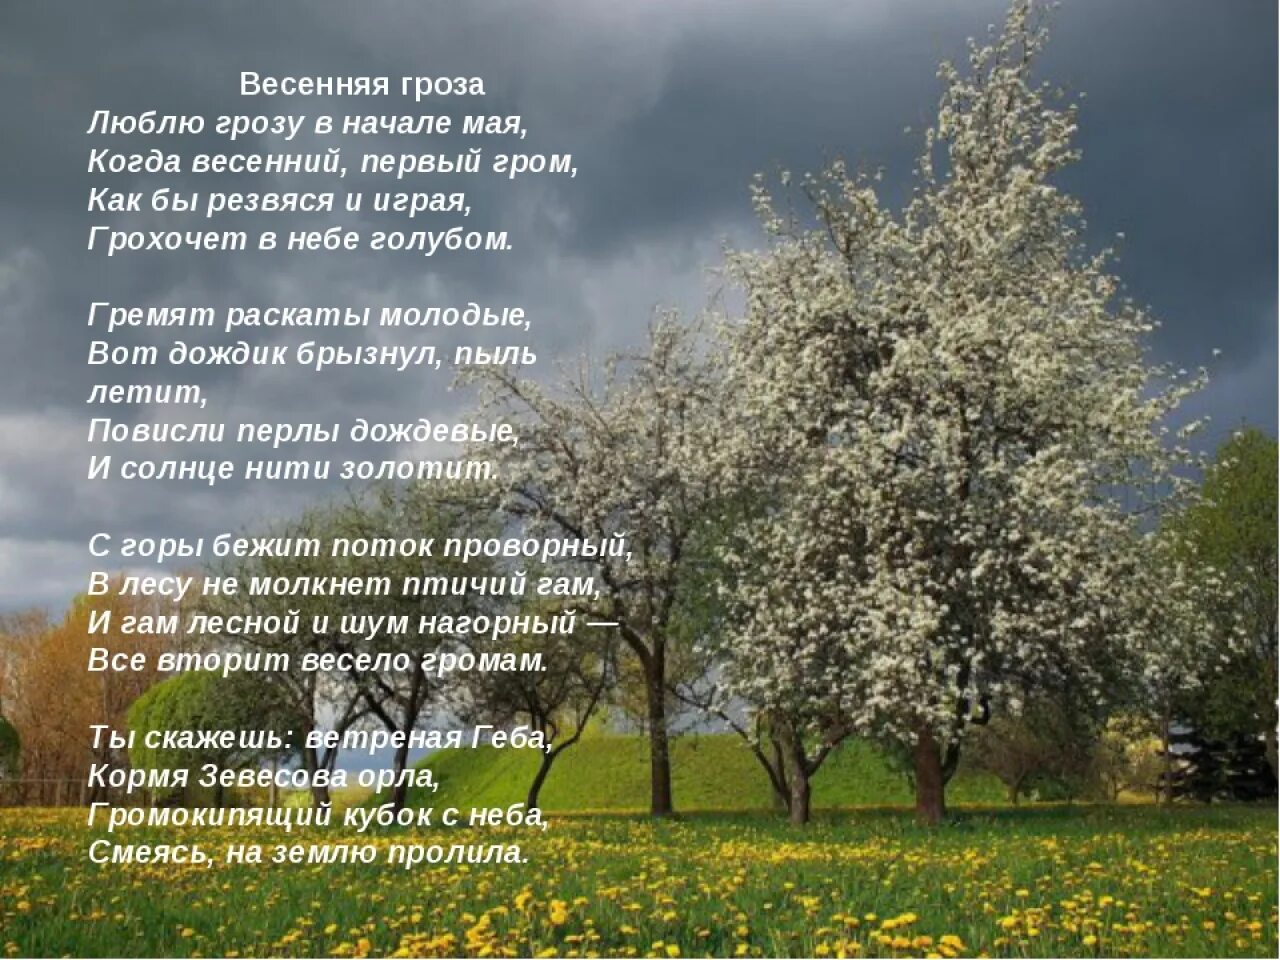 Цветущий май текст. Весенние стихи. Стихи про май короткие. Стих про весну. Люблю грозу в начале мая стихотворение.